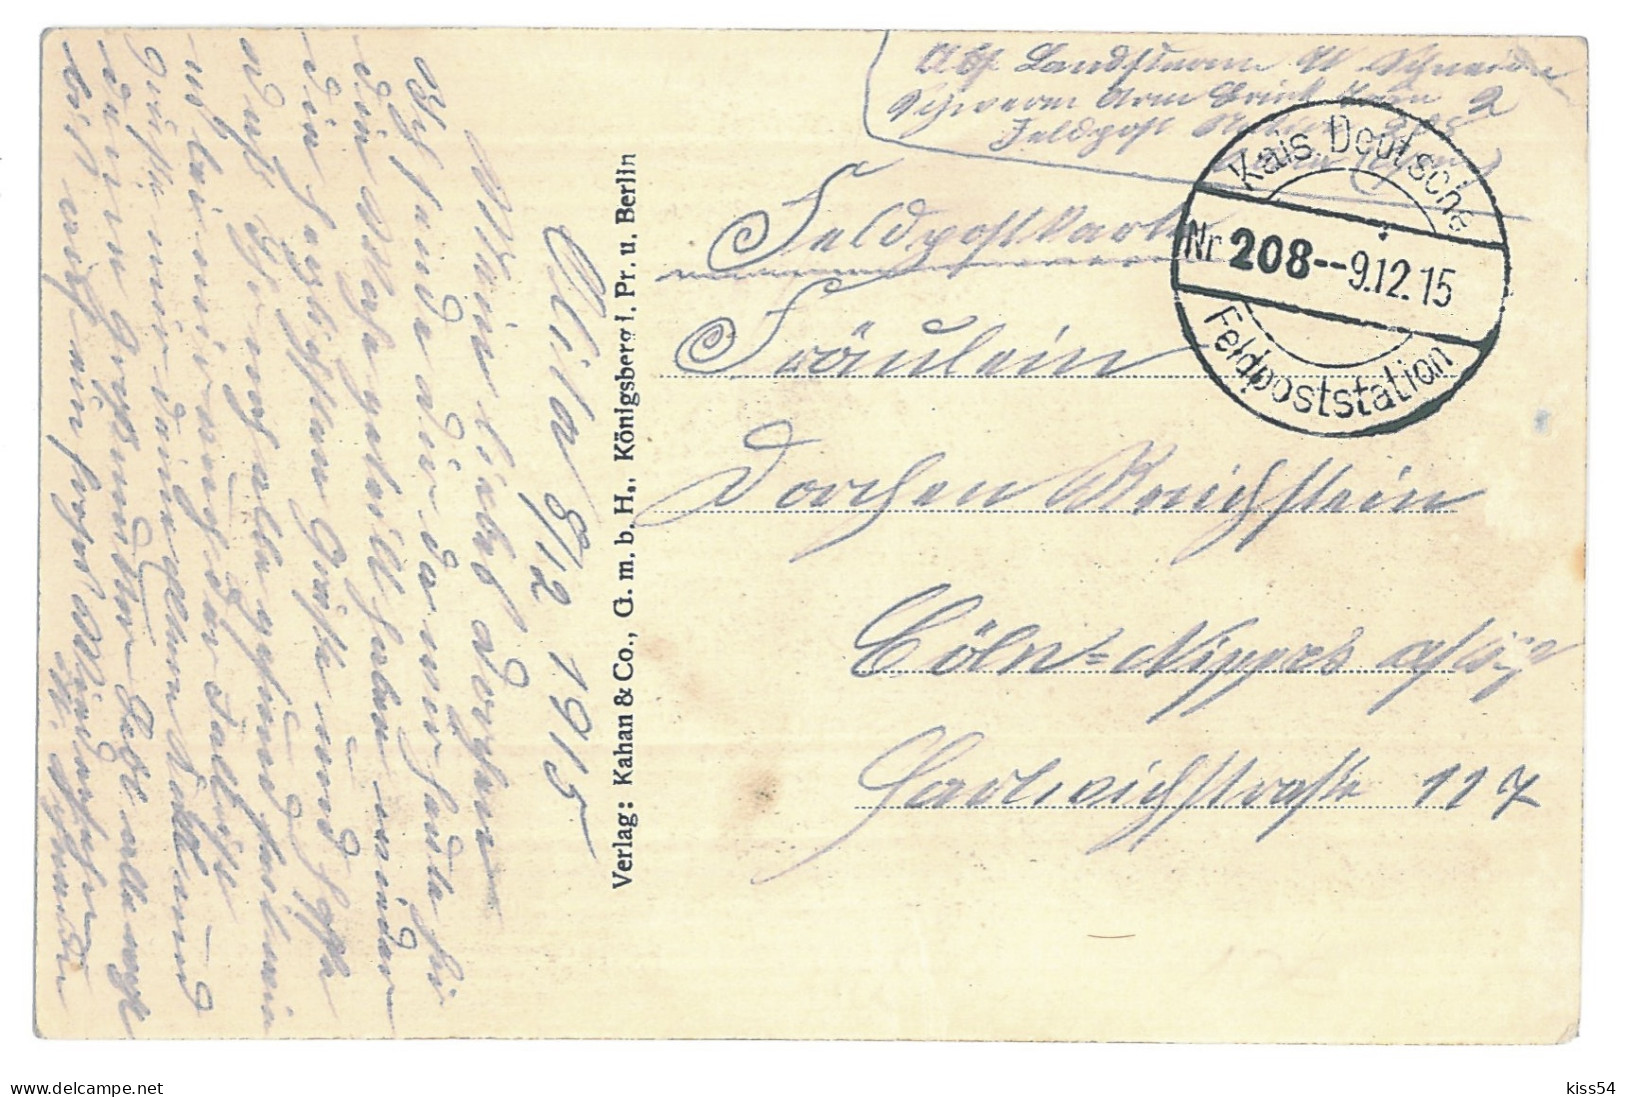 BL 31 - 13982 GRODNO, Belarus, Military Convoy - Old Postcard, CENSOR - Used - 1915 - Belarus